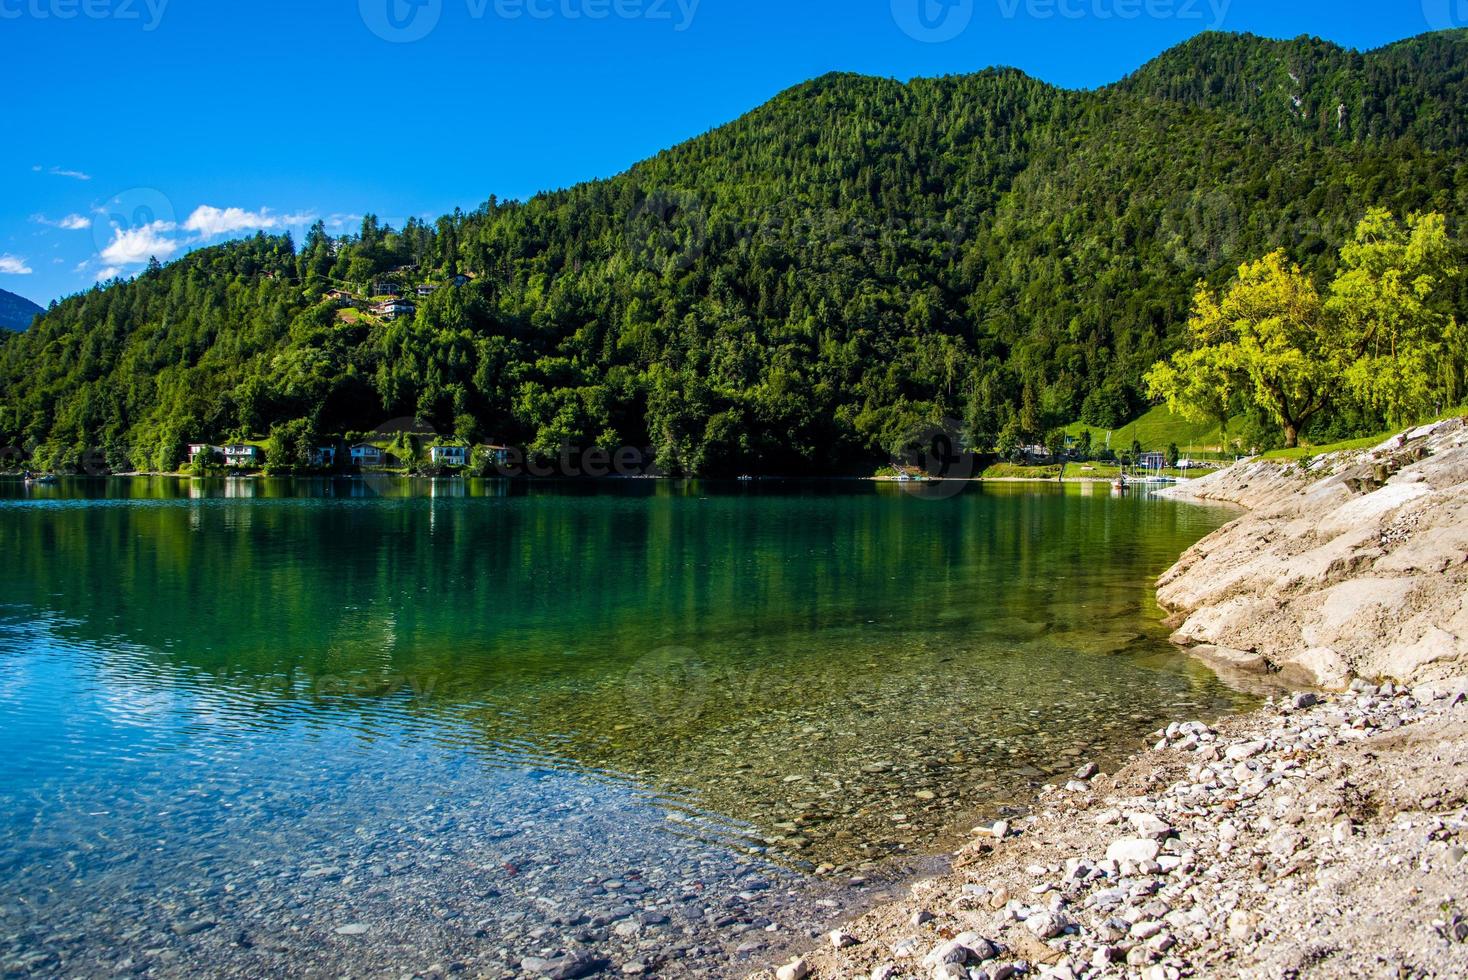 lago ledro nos alpes em trento, itália foto